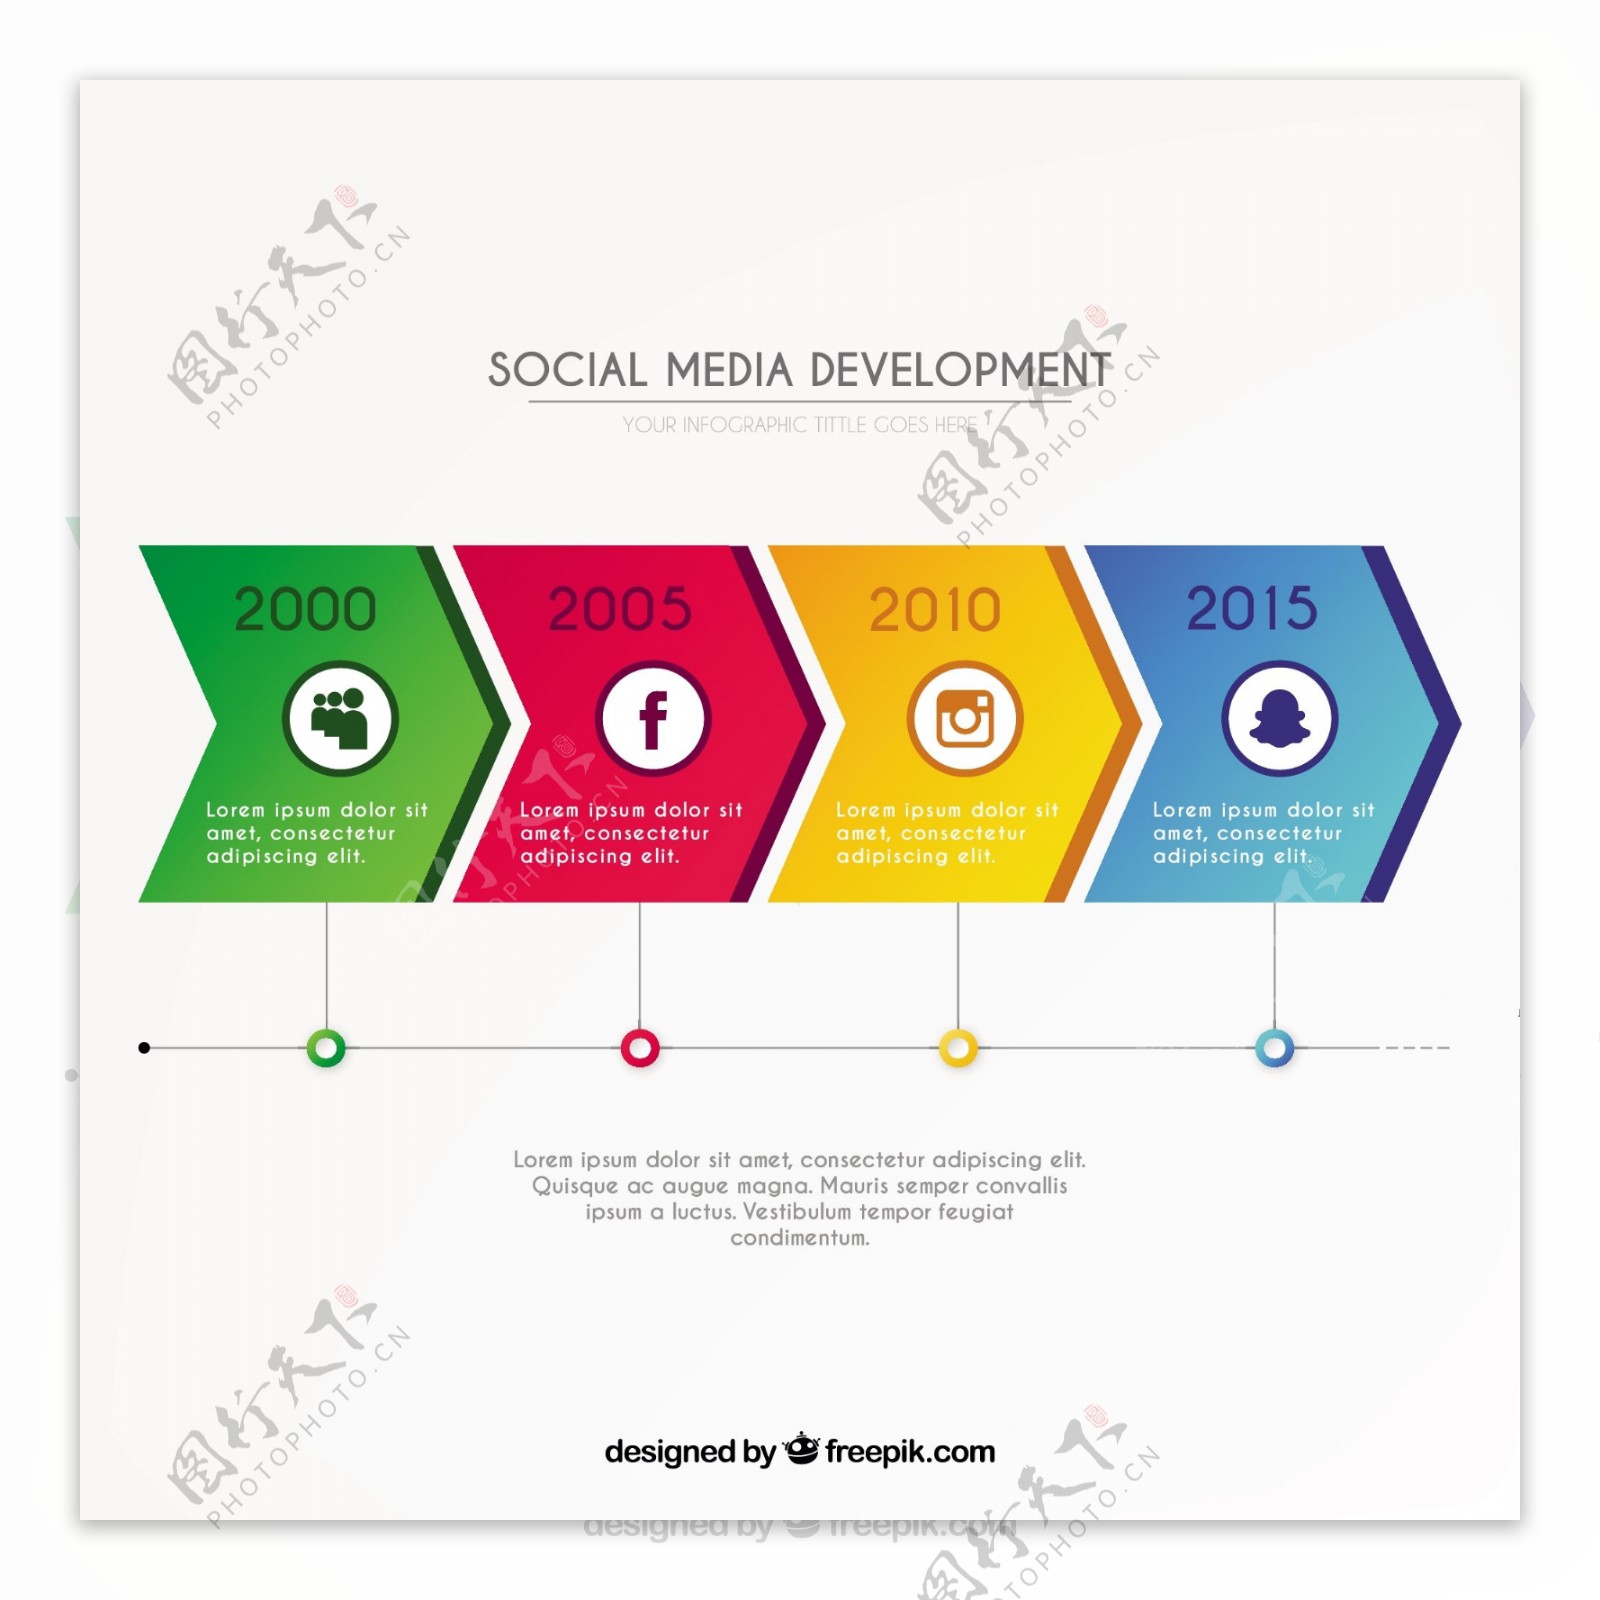 关于社会媒体发展的信息图表